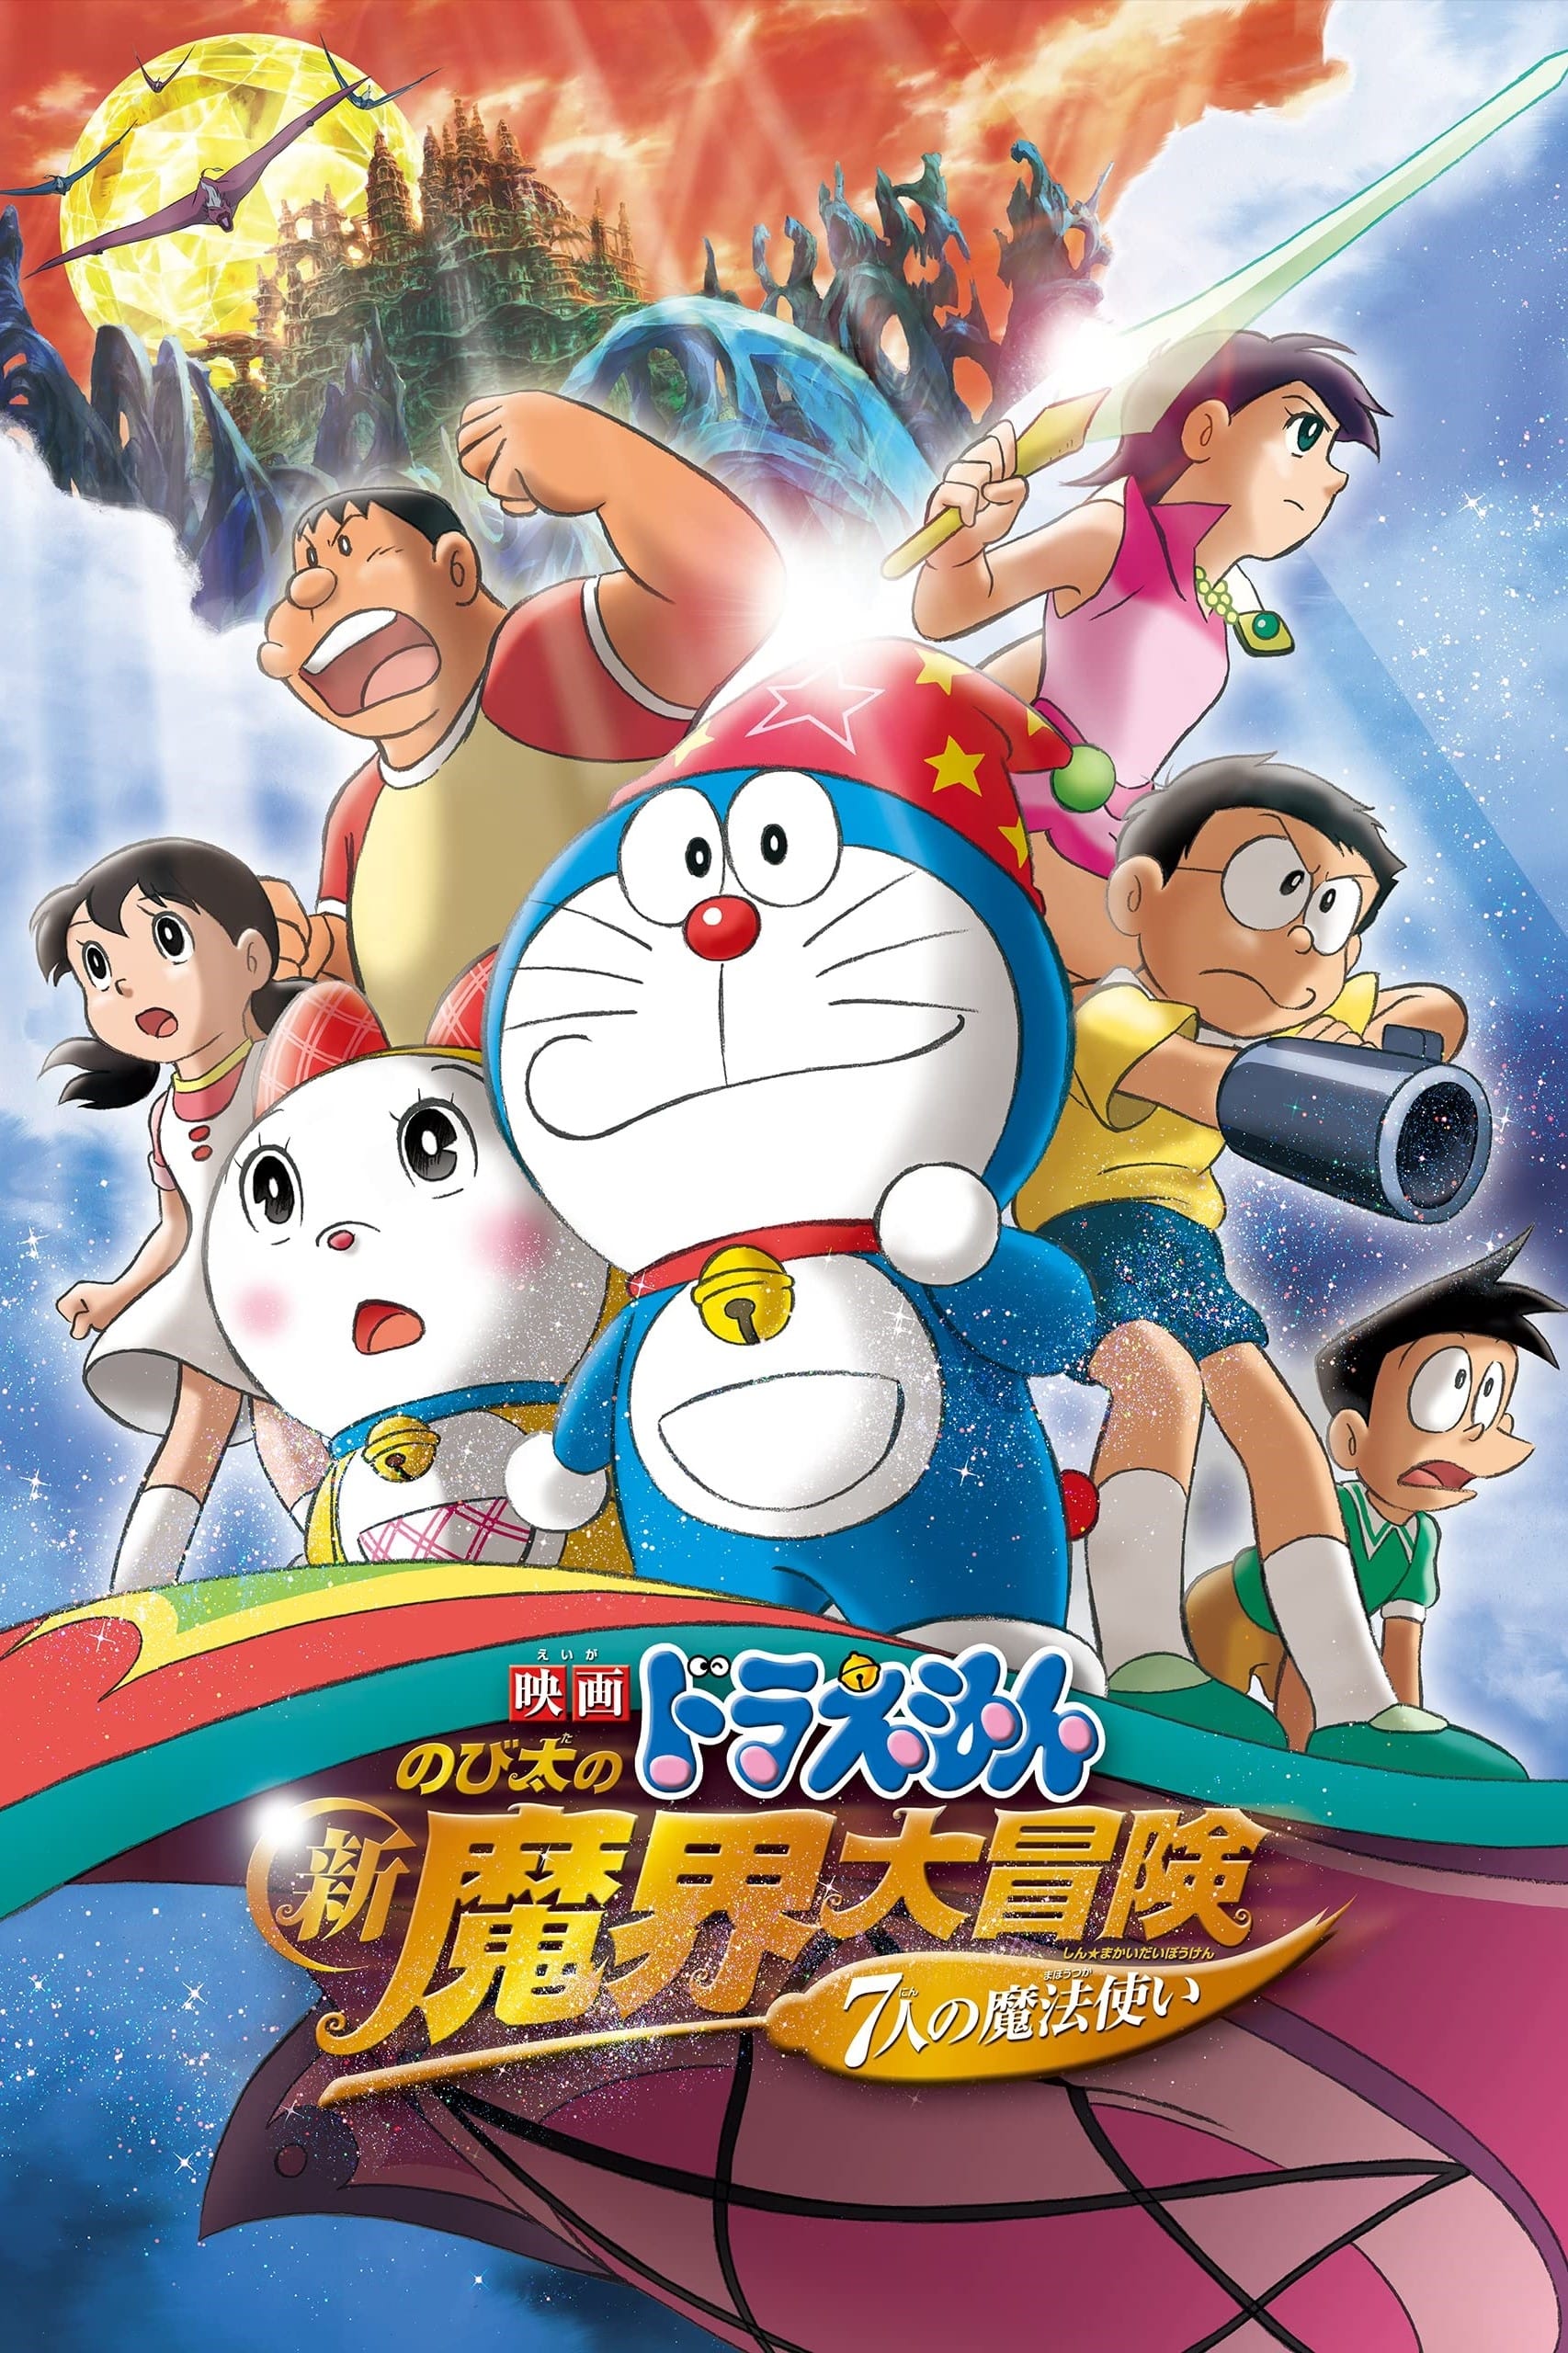 Doraemon y los siete magos (2007)